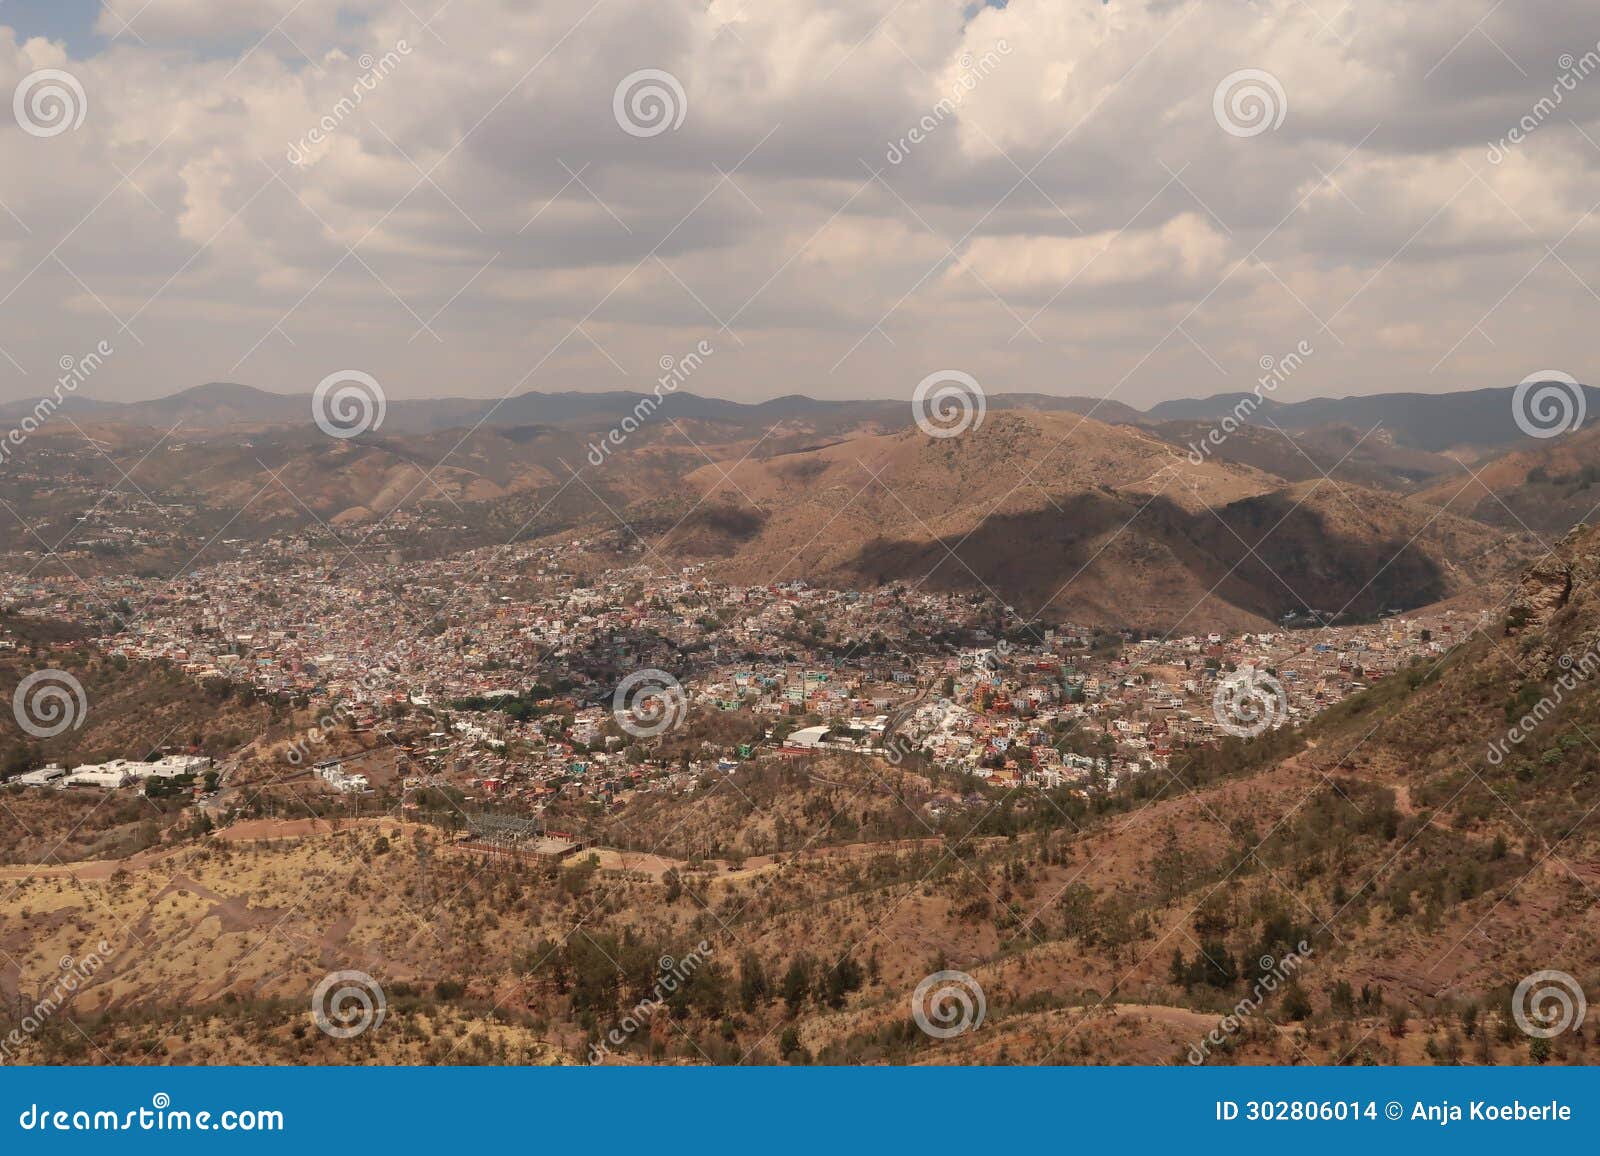 spectacular view from the cerro de la bufa hiking area onto guanajuato, mexico